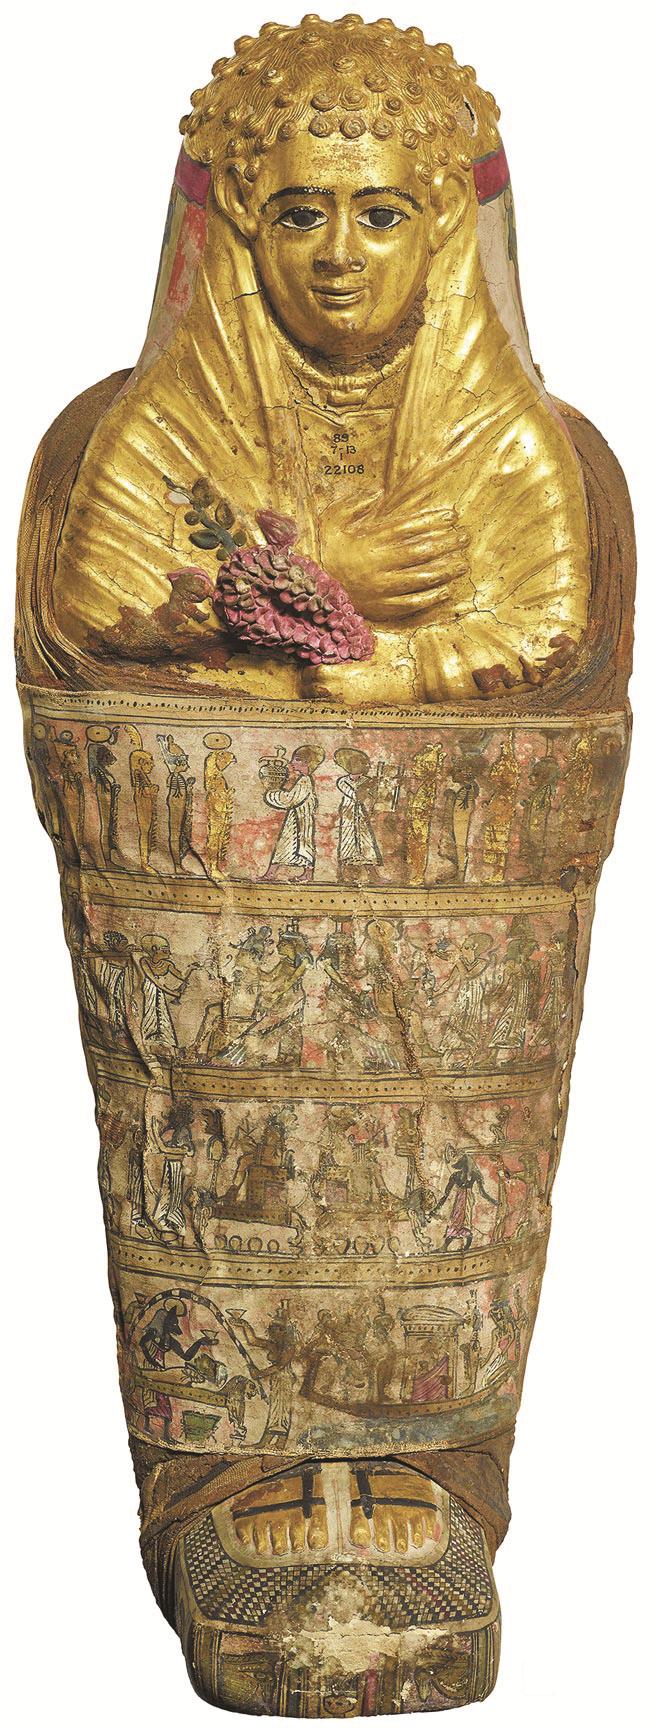 来自哈瓦拉的儿童木乃伊」是罗马时期的埃及木乃伊，有金色面具，手上则握着花朵